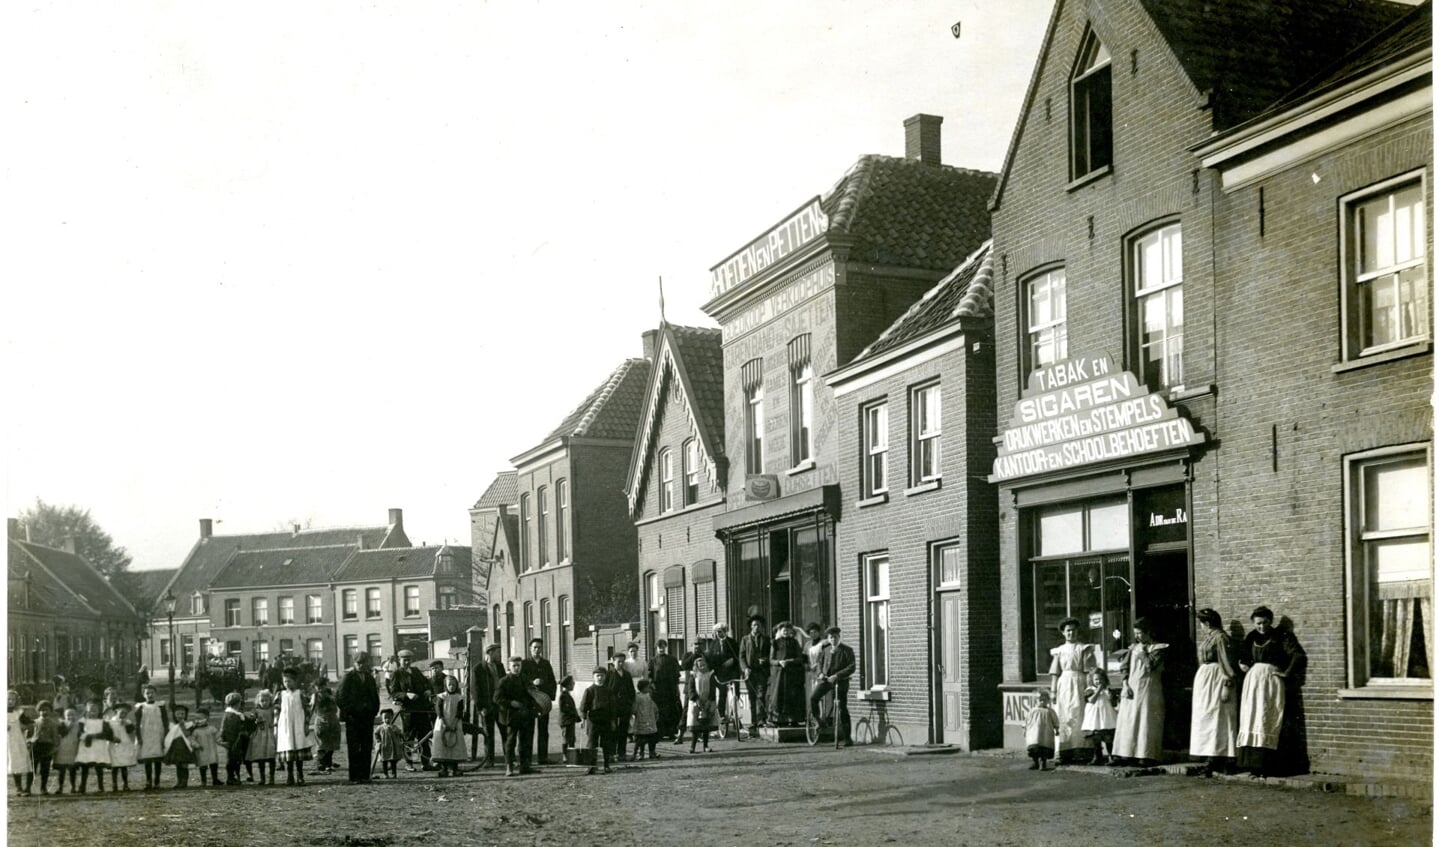 Het Walplein rond 1910. Helemaal rechts in beeld is de winkel van Adrianus van de Rakt te zien, voor “Tabak en sigaren, drukwerken en stempels, kantoor- en schoolbehoeften”. Foto: Adrianus van de Rakt.